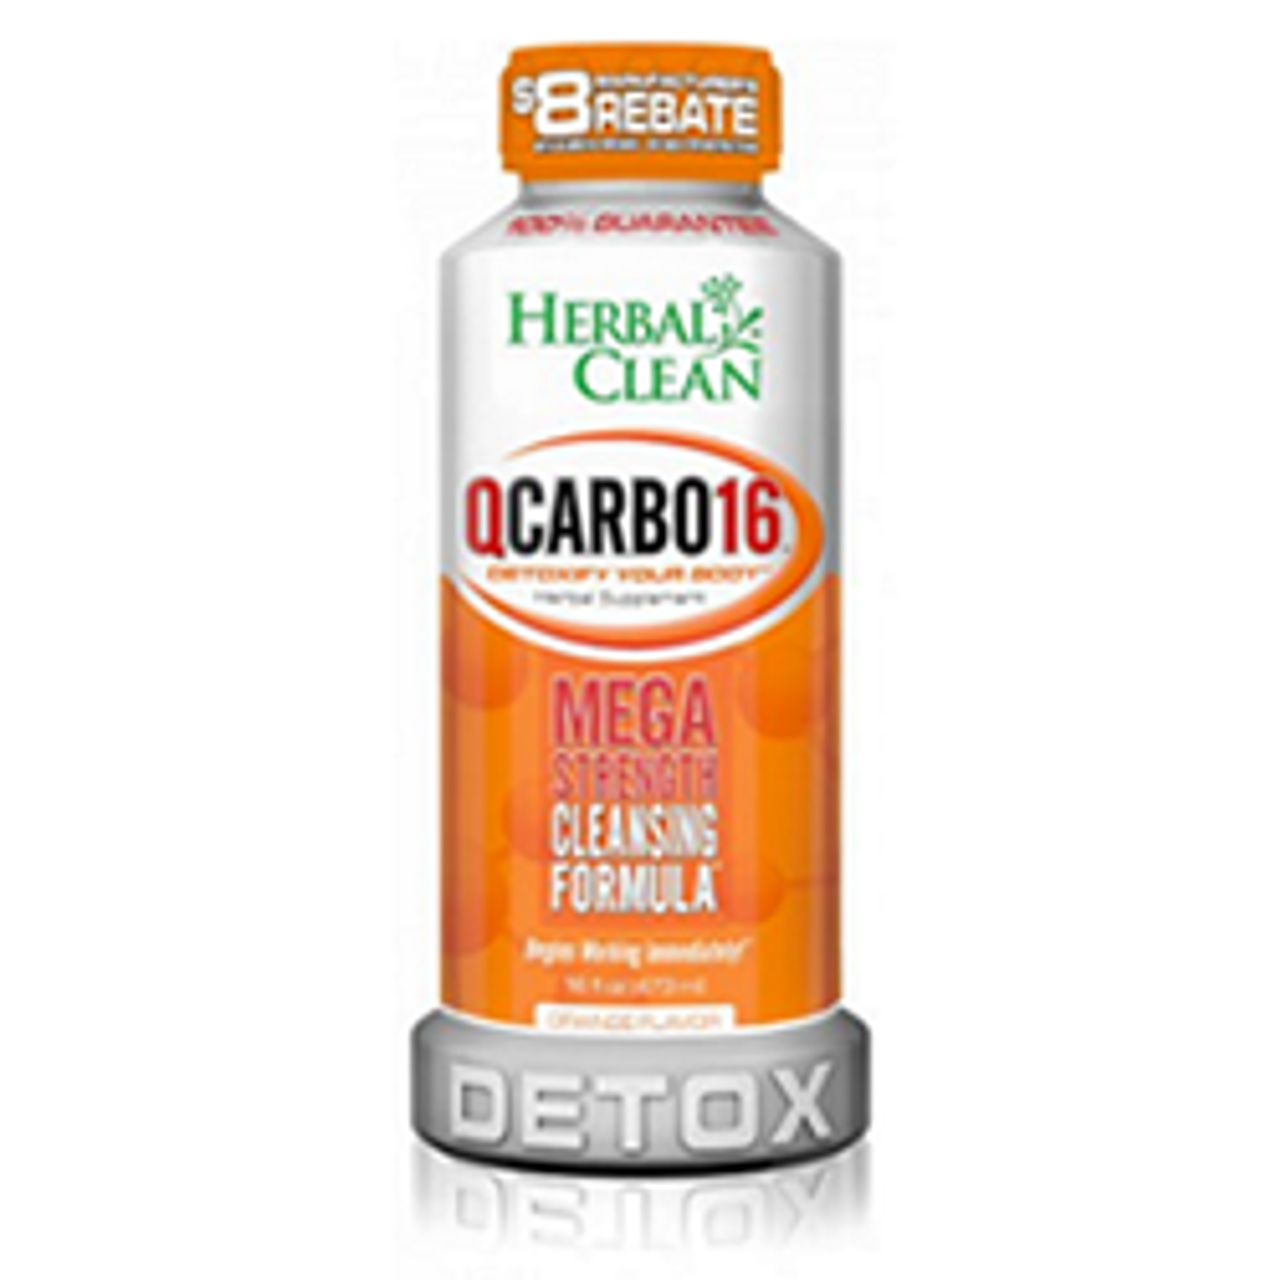 Qcarbo 16 in Orange Flavor